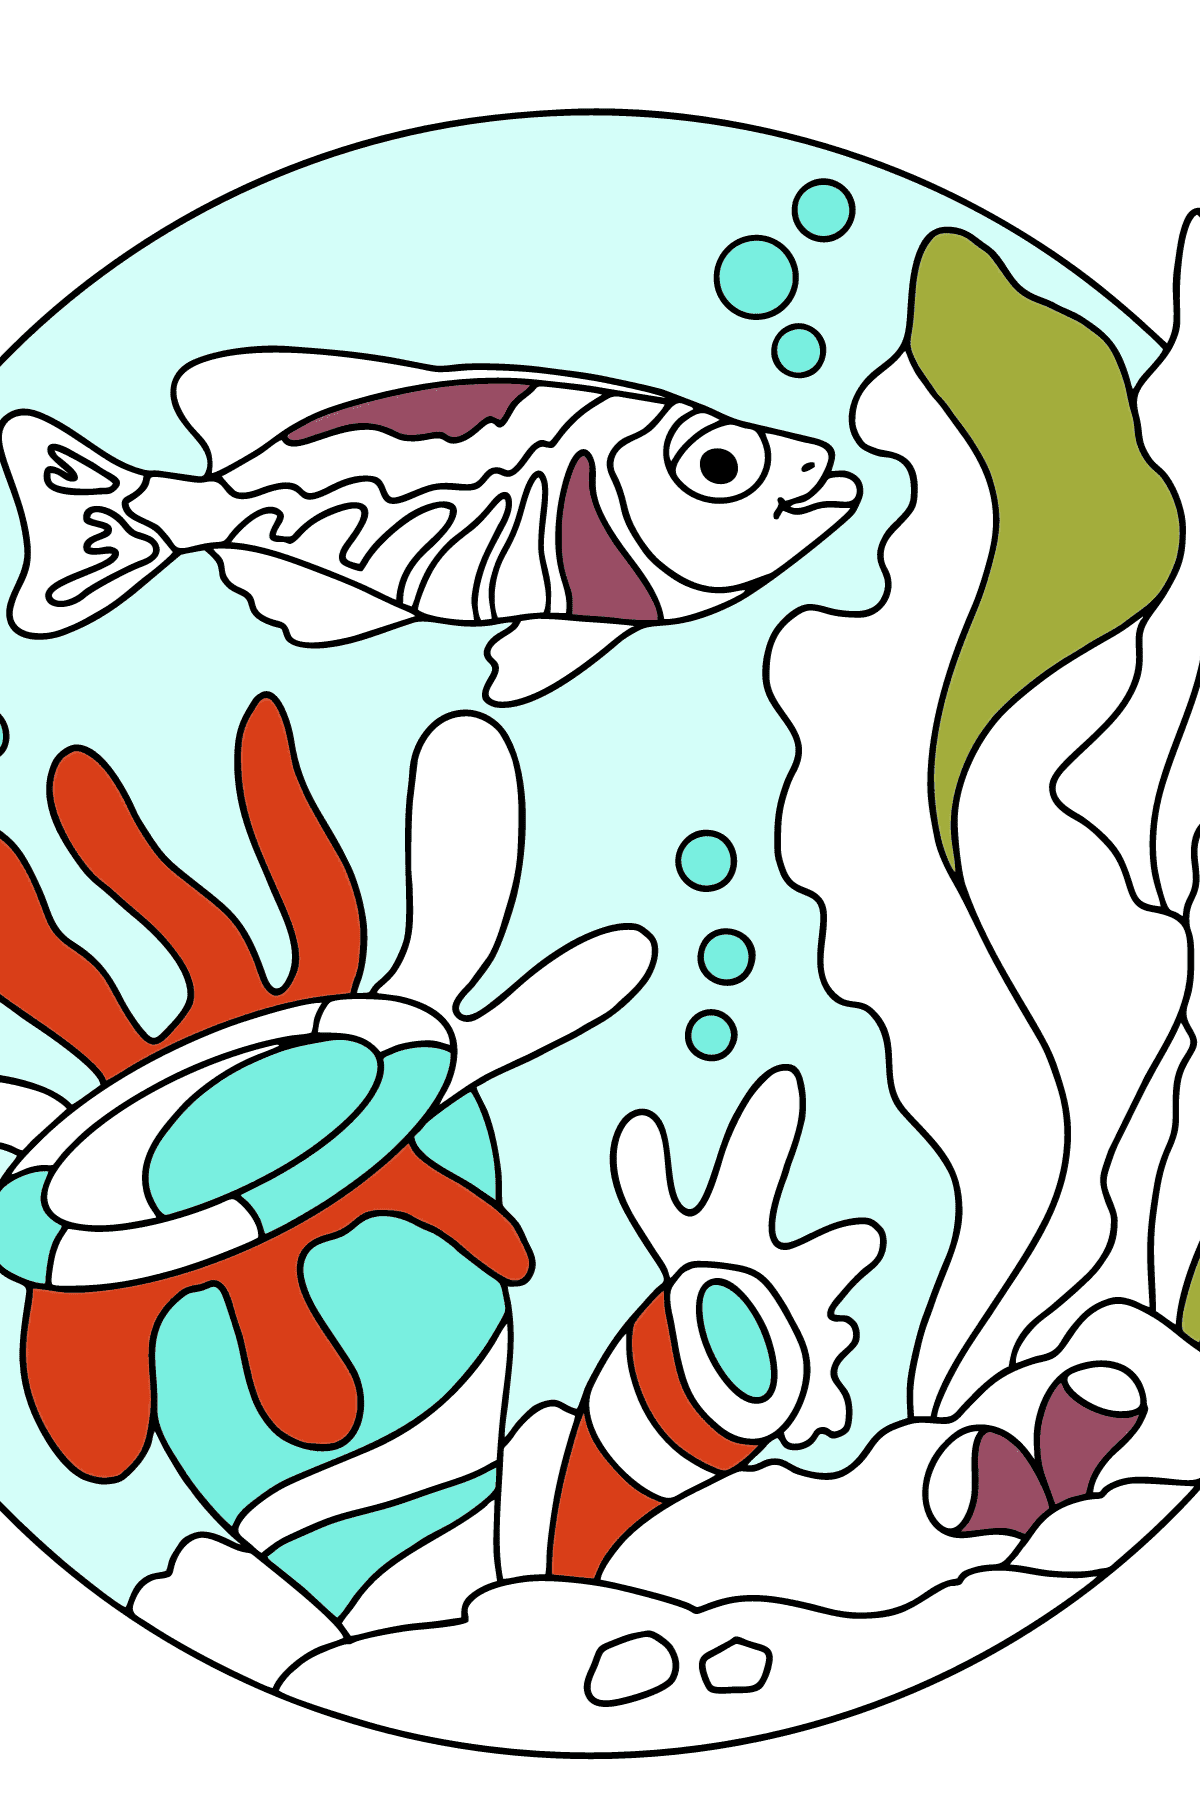 Раскраска рыбка для малышей - Картинки для Детей